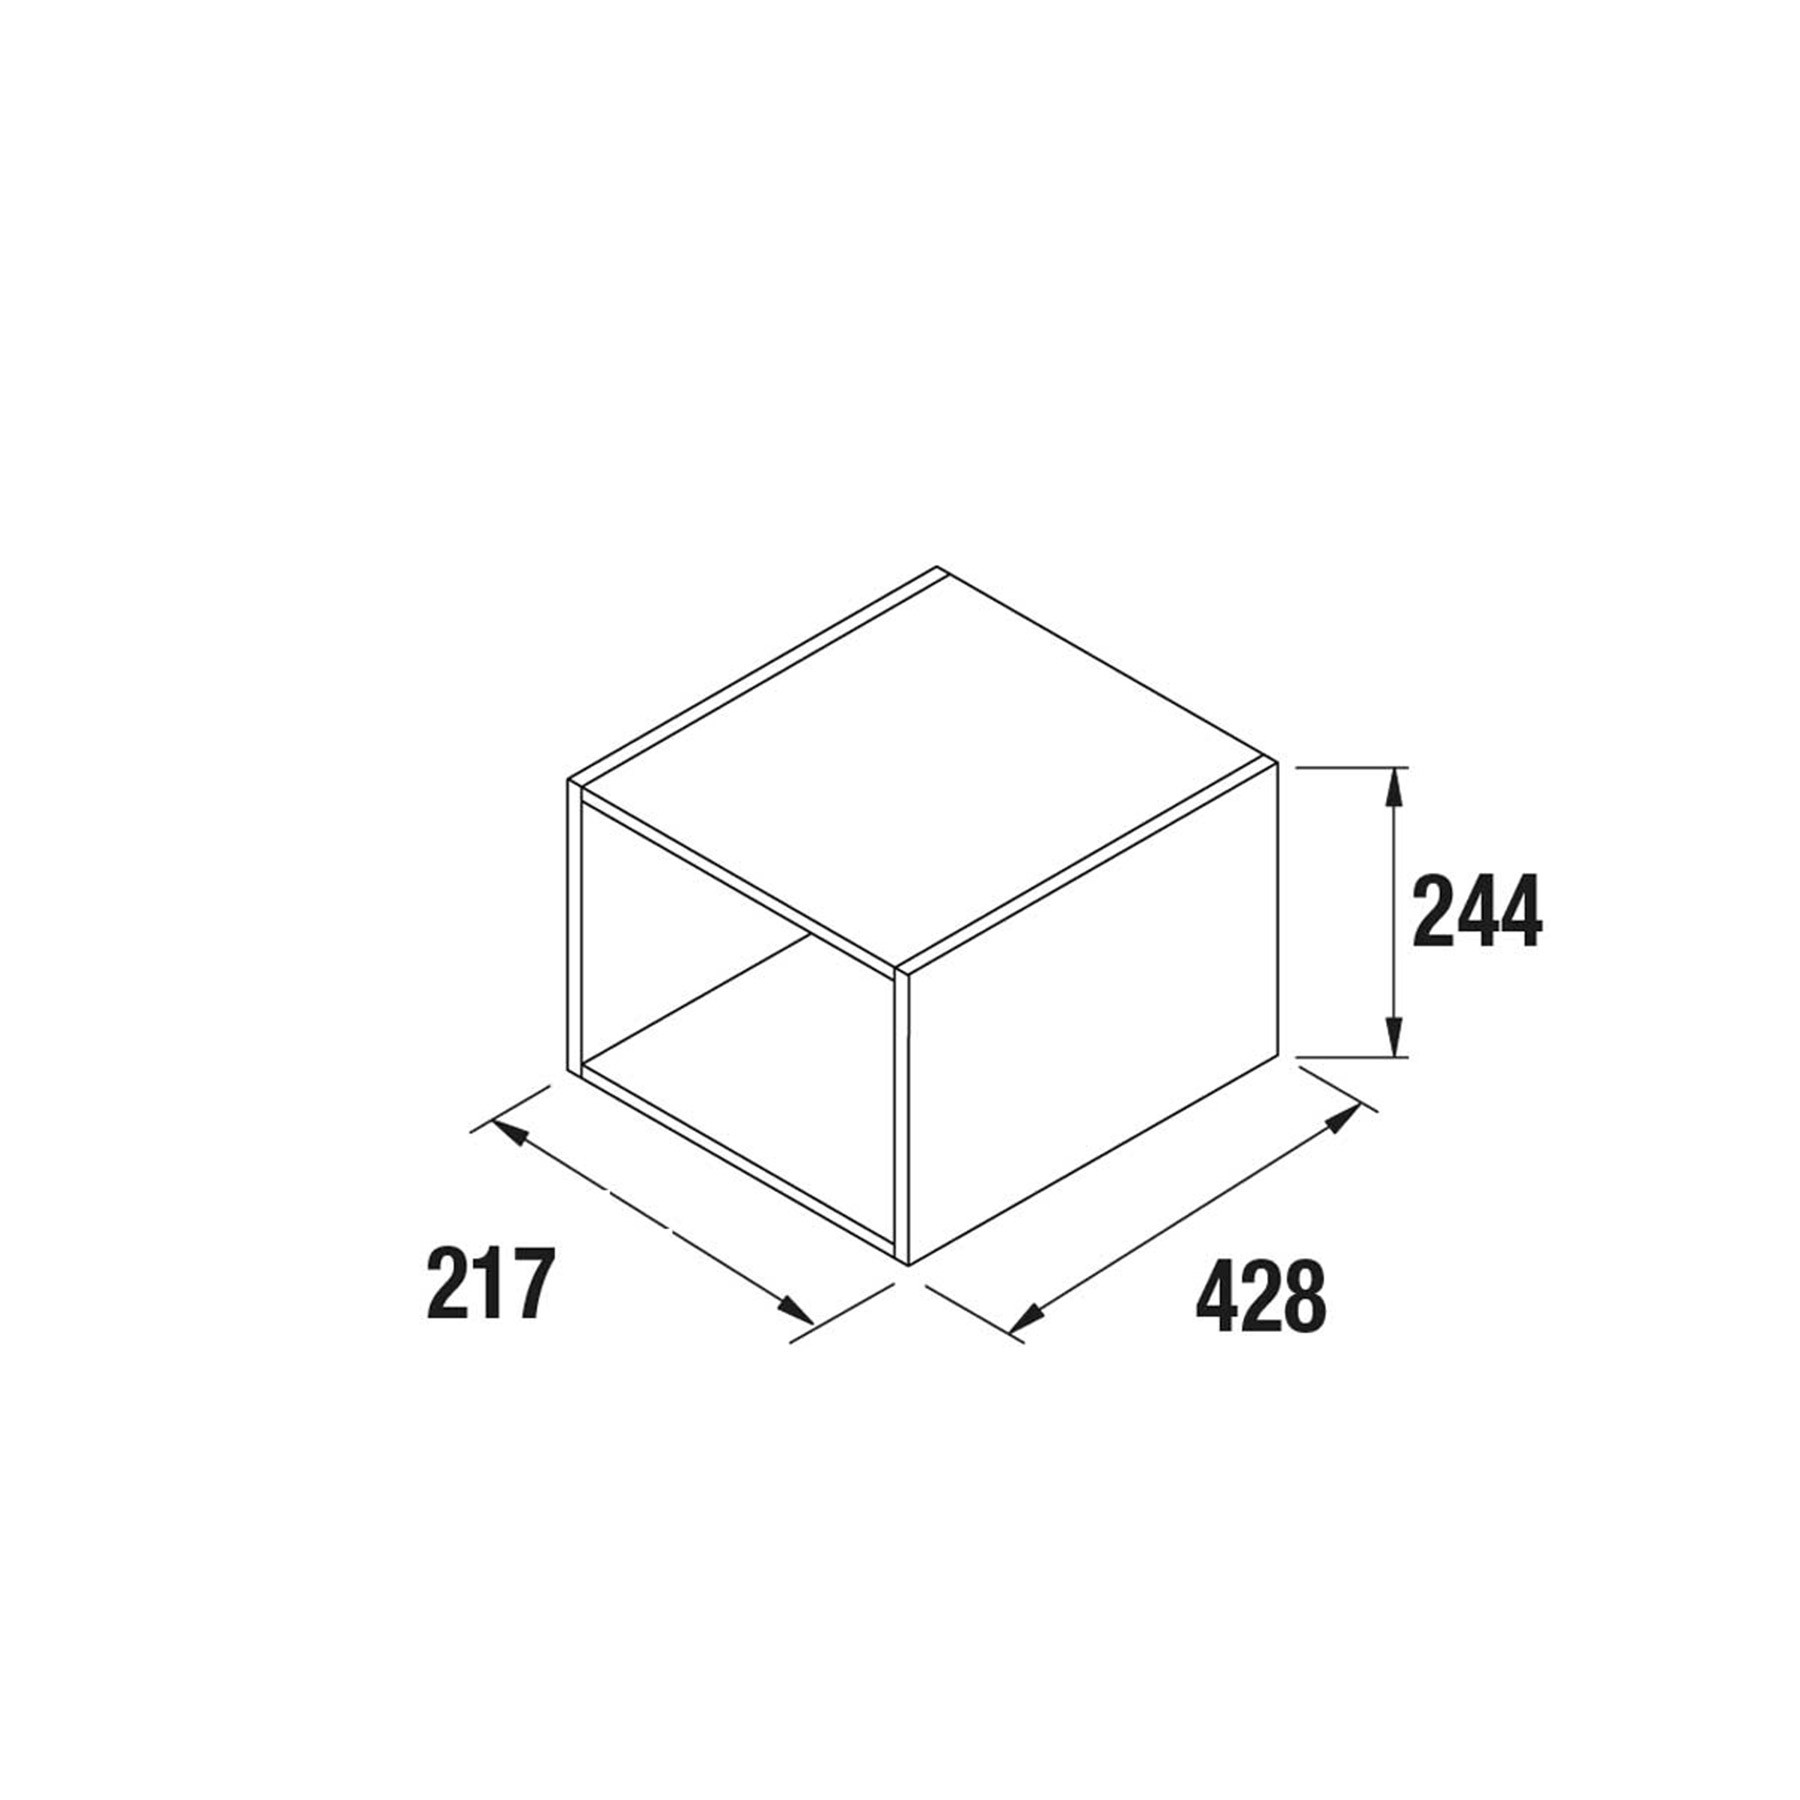 Ensemble 2 cubes Meuble de salle de bains Gamme PRO SALGAR ALLIANCE 250 217 x 244 x 428 mm - Réf:23346